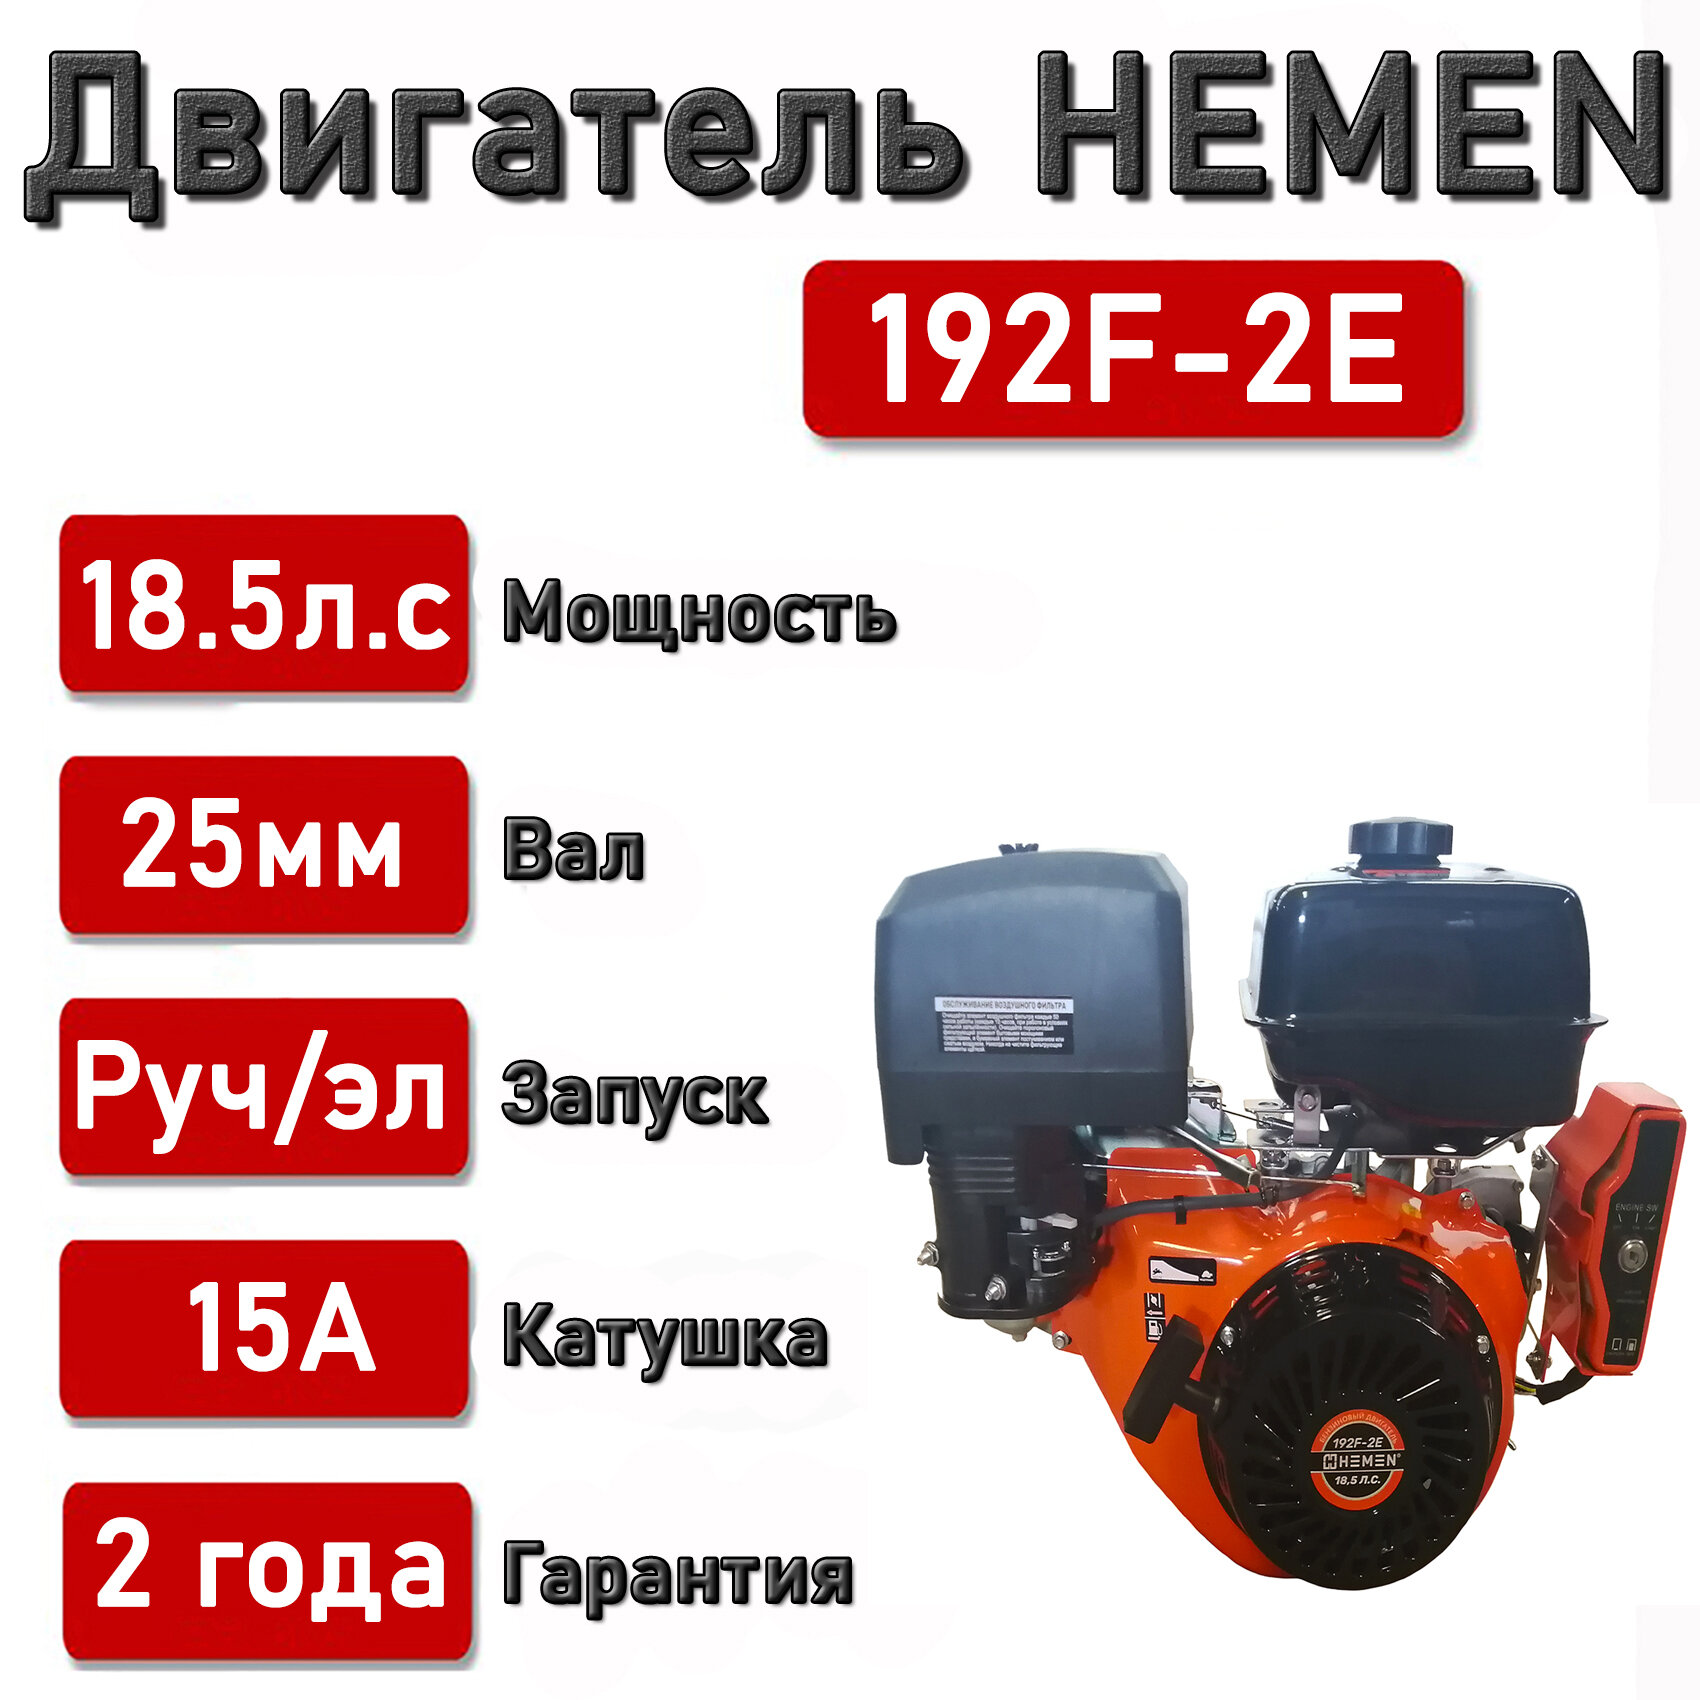 Двигатель HEMEN 185 л. с. с катушкой 15А180Вт 192F-2E (458 см3) электростартер вал 25 мм